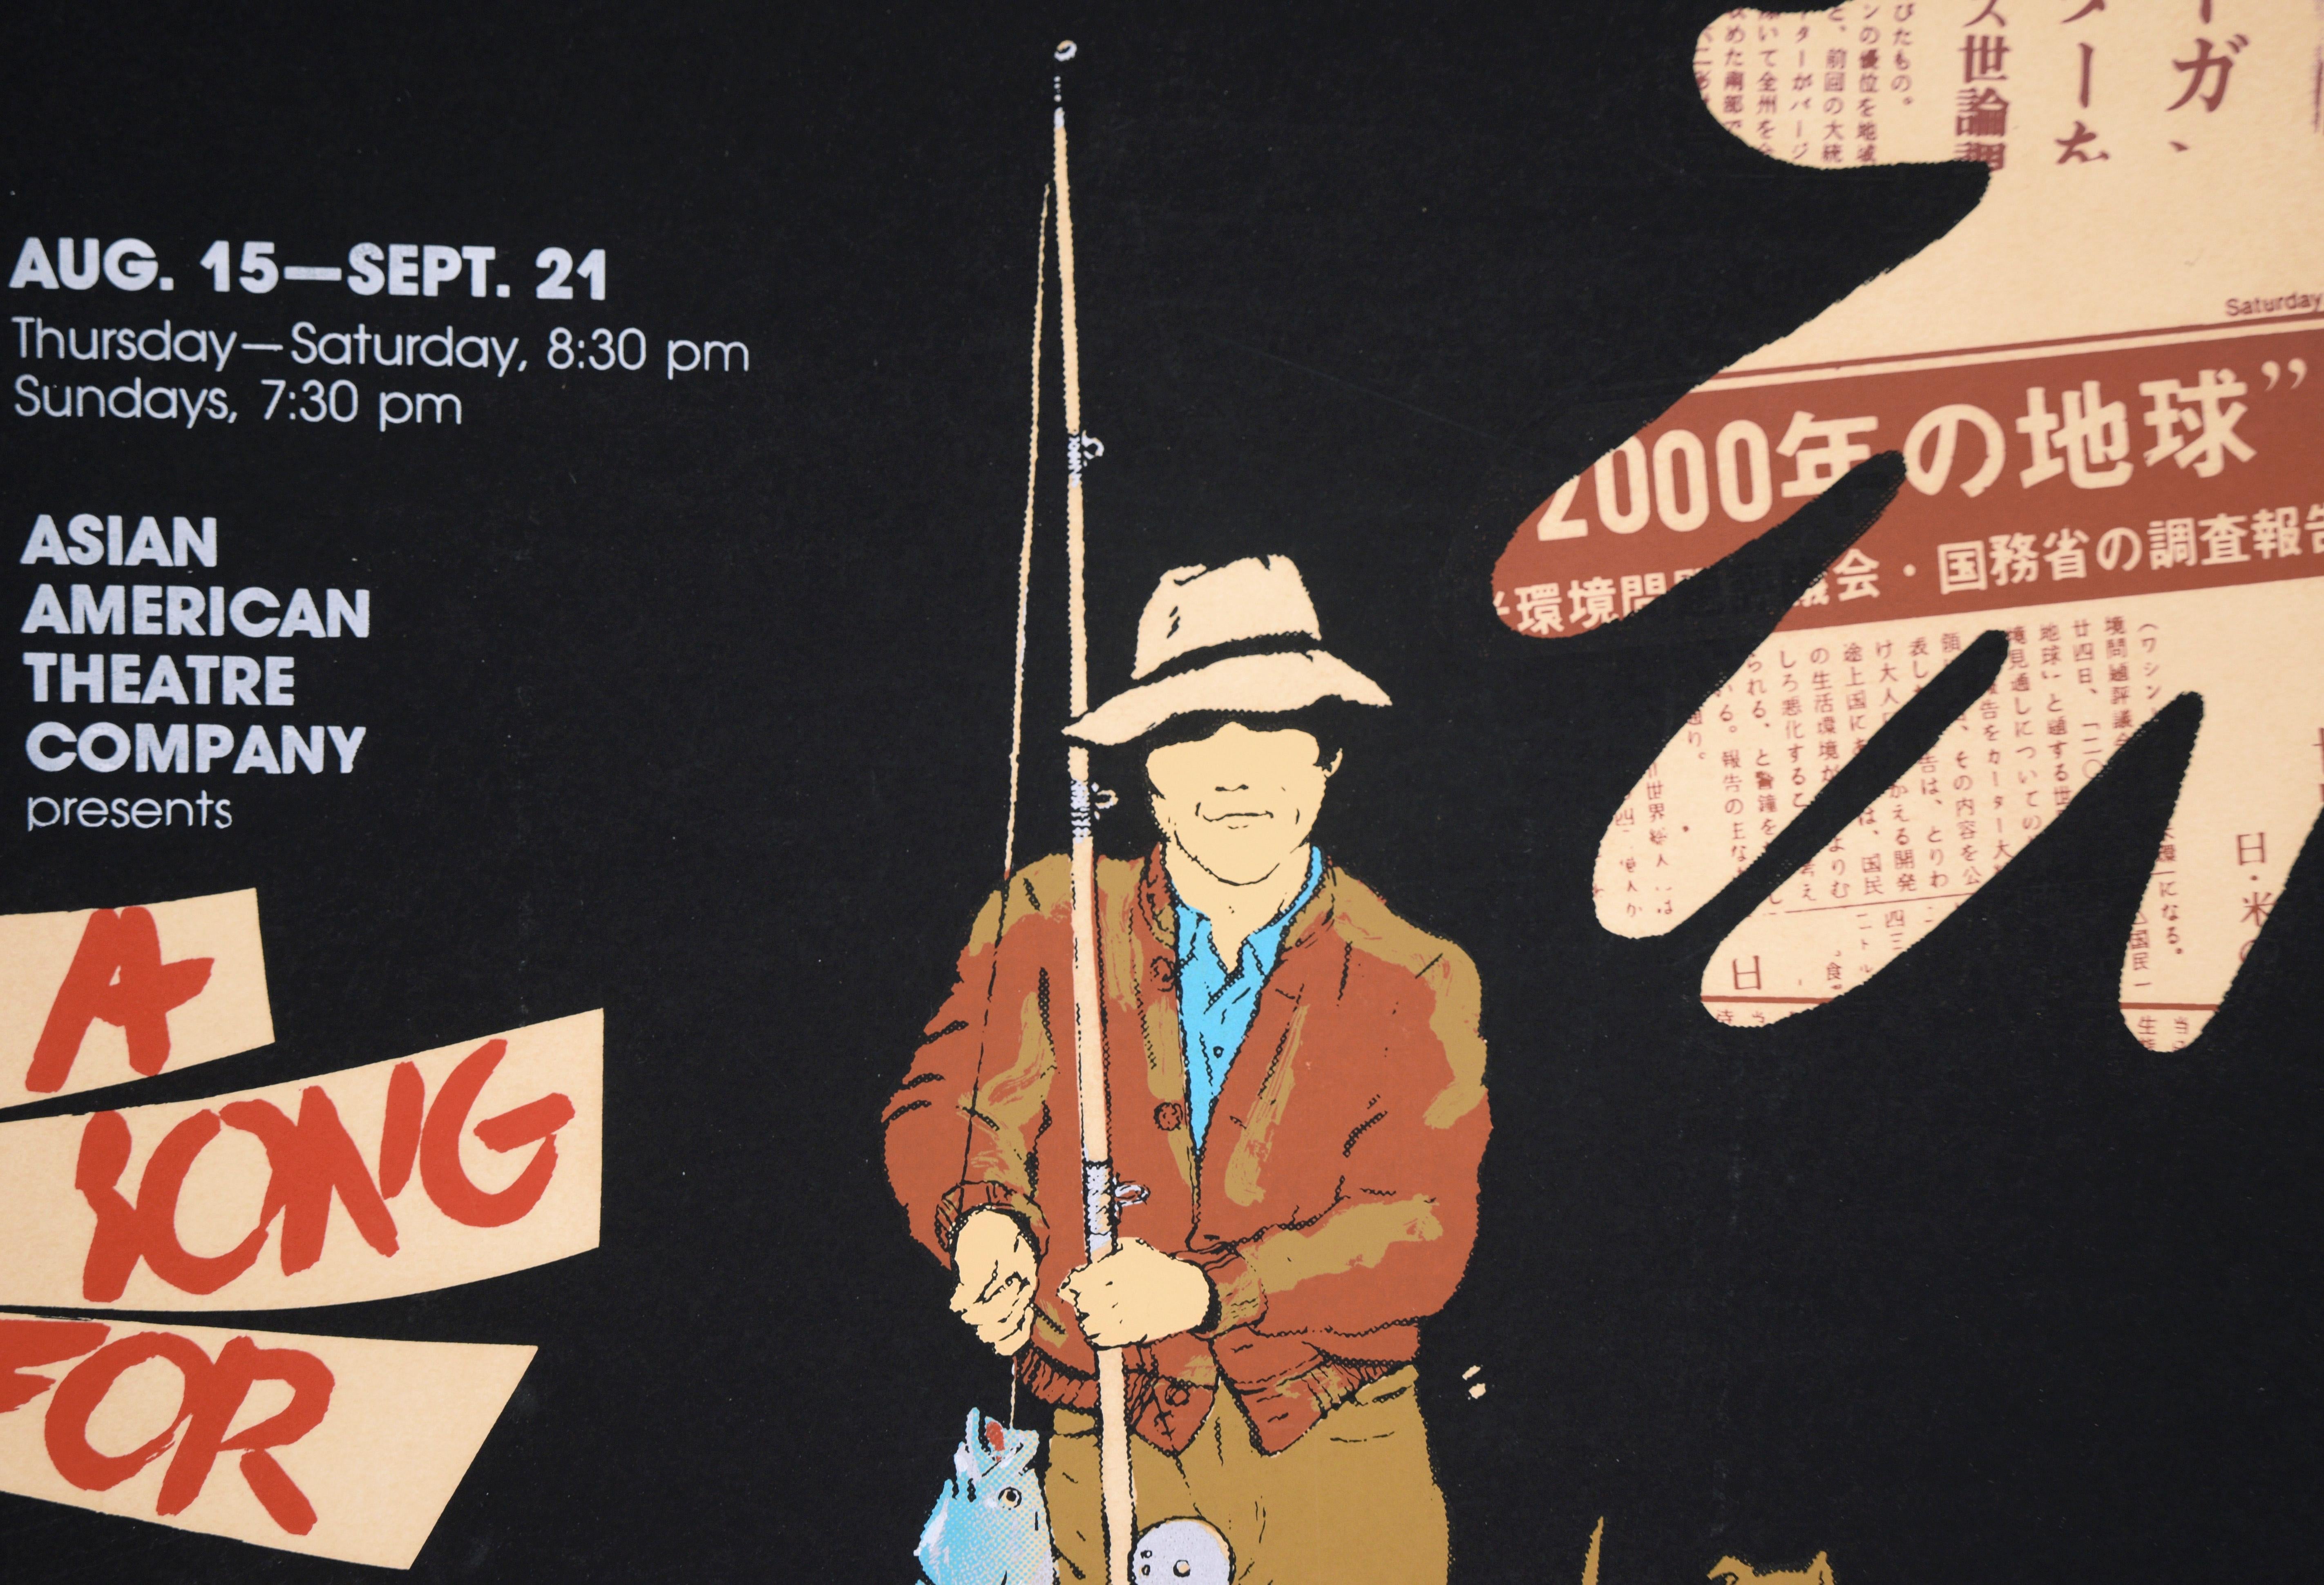 Poster „A Song for a Nesei Fisherman“, Plakat, limitierte Auflage, Siebdruck #14 von 100 Stück

Ausstellungsplakat, entworfen von Chester Yoshida (Amerikaner, geb. 1922). Das Stück 